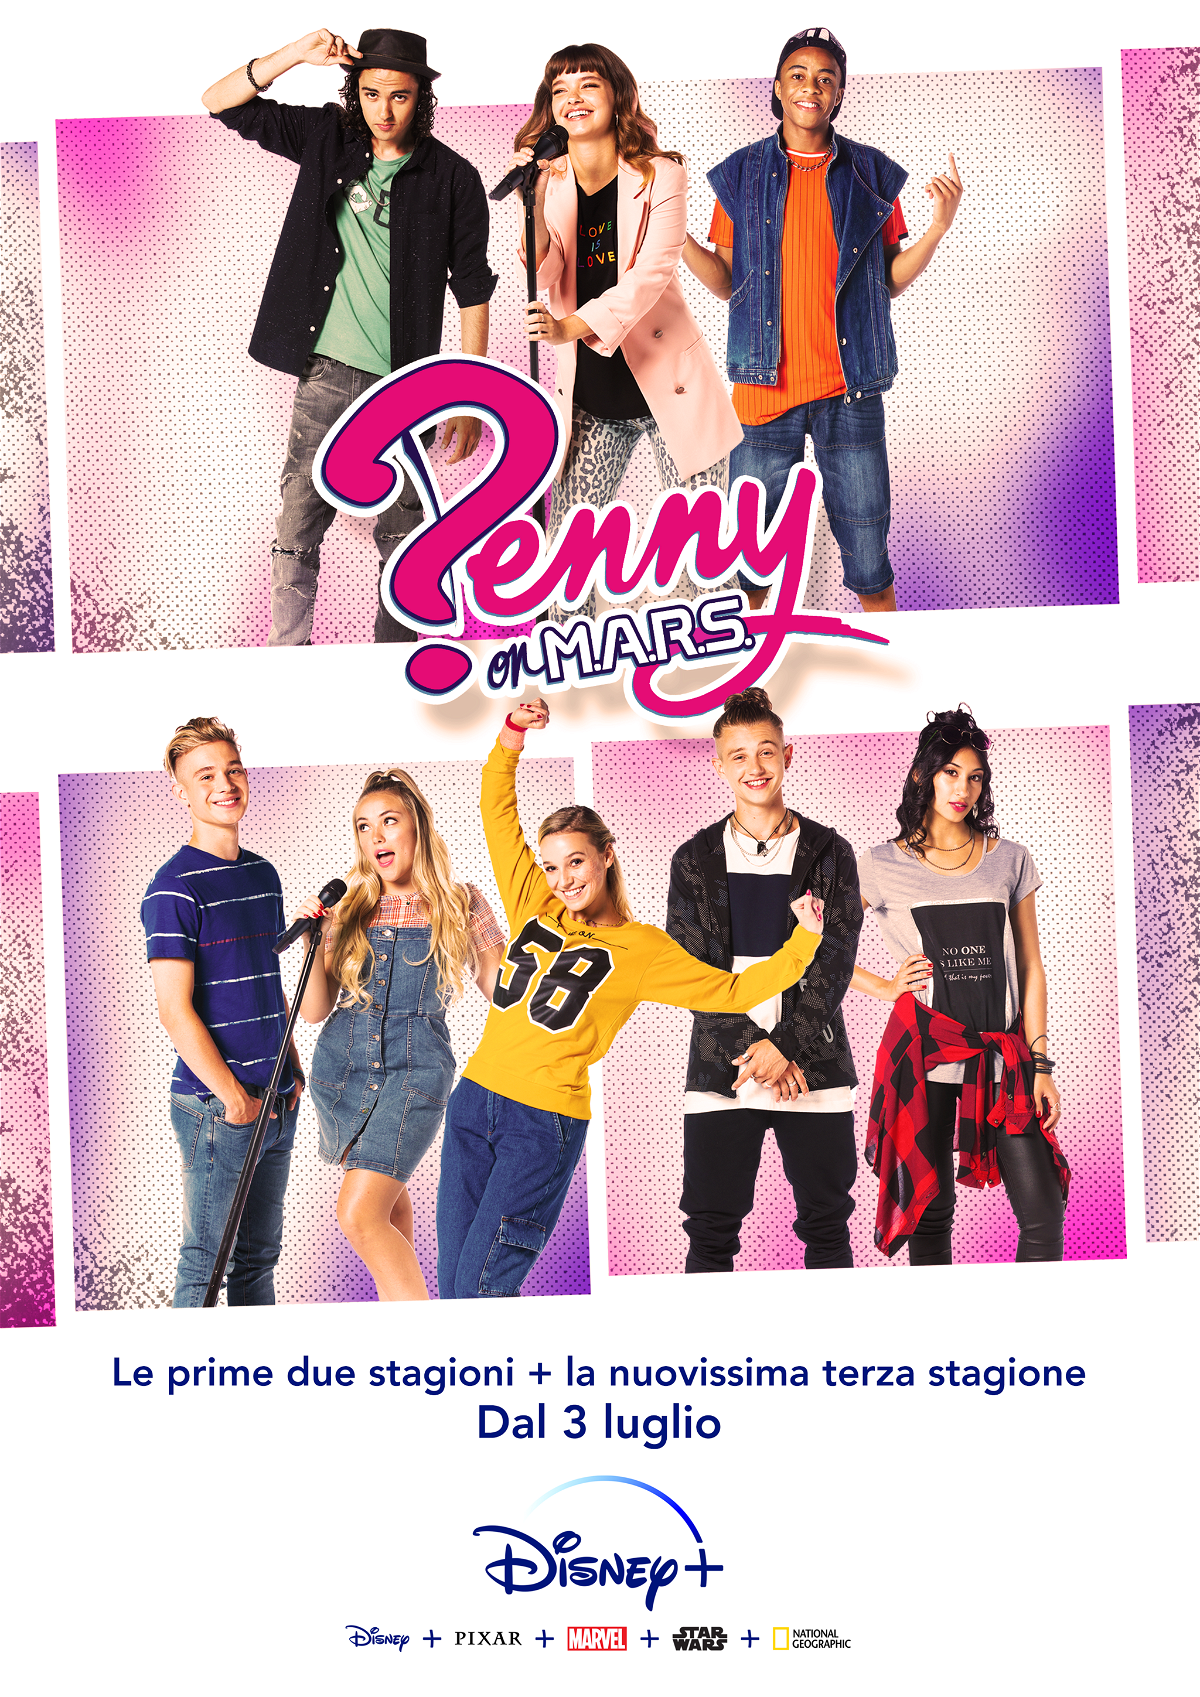 La locandina della terza stagione di Penny on M.A.R.S.